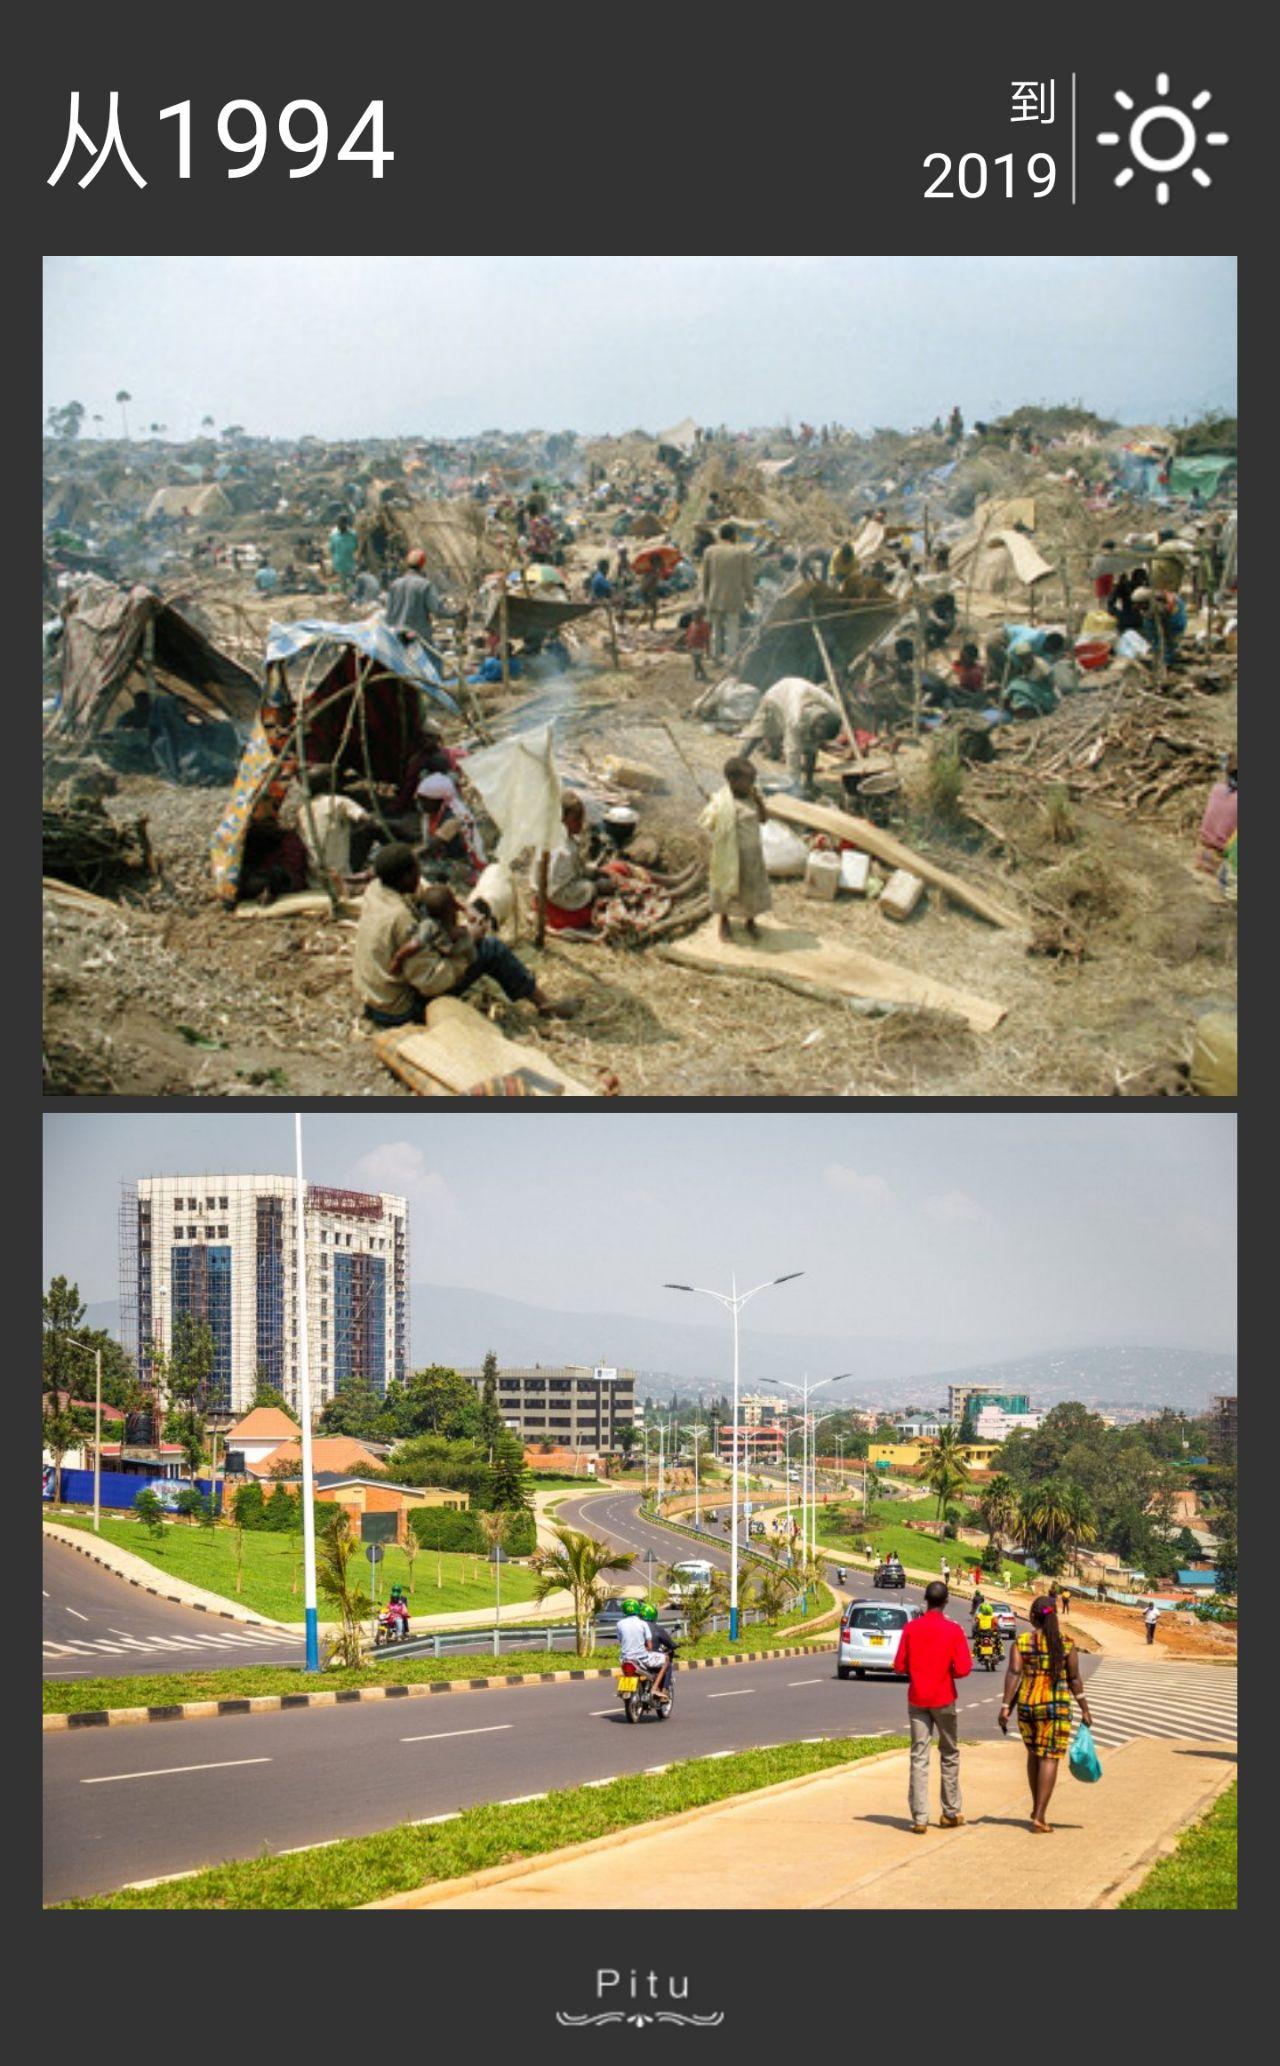 卢旺达这个国家现在真实情况如何